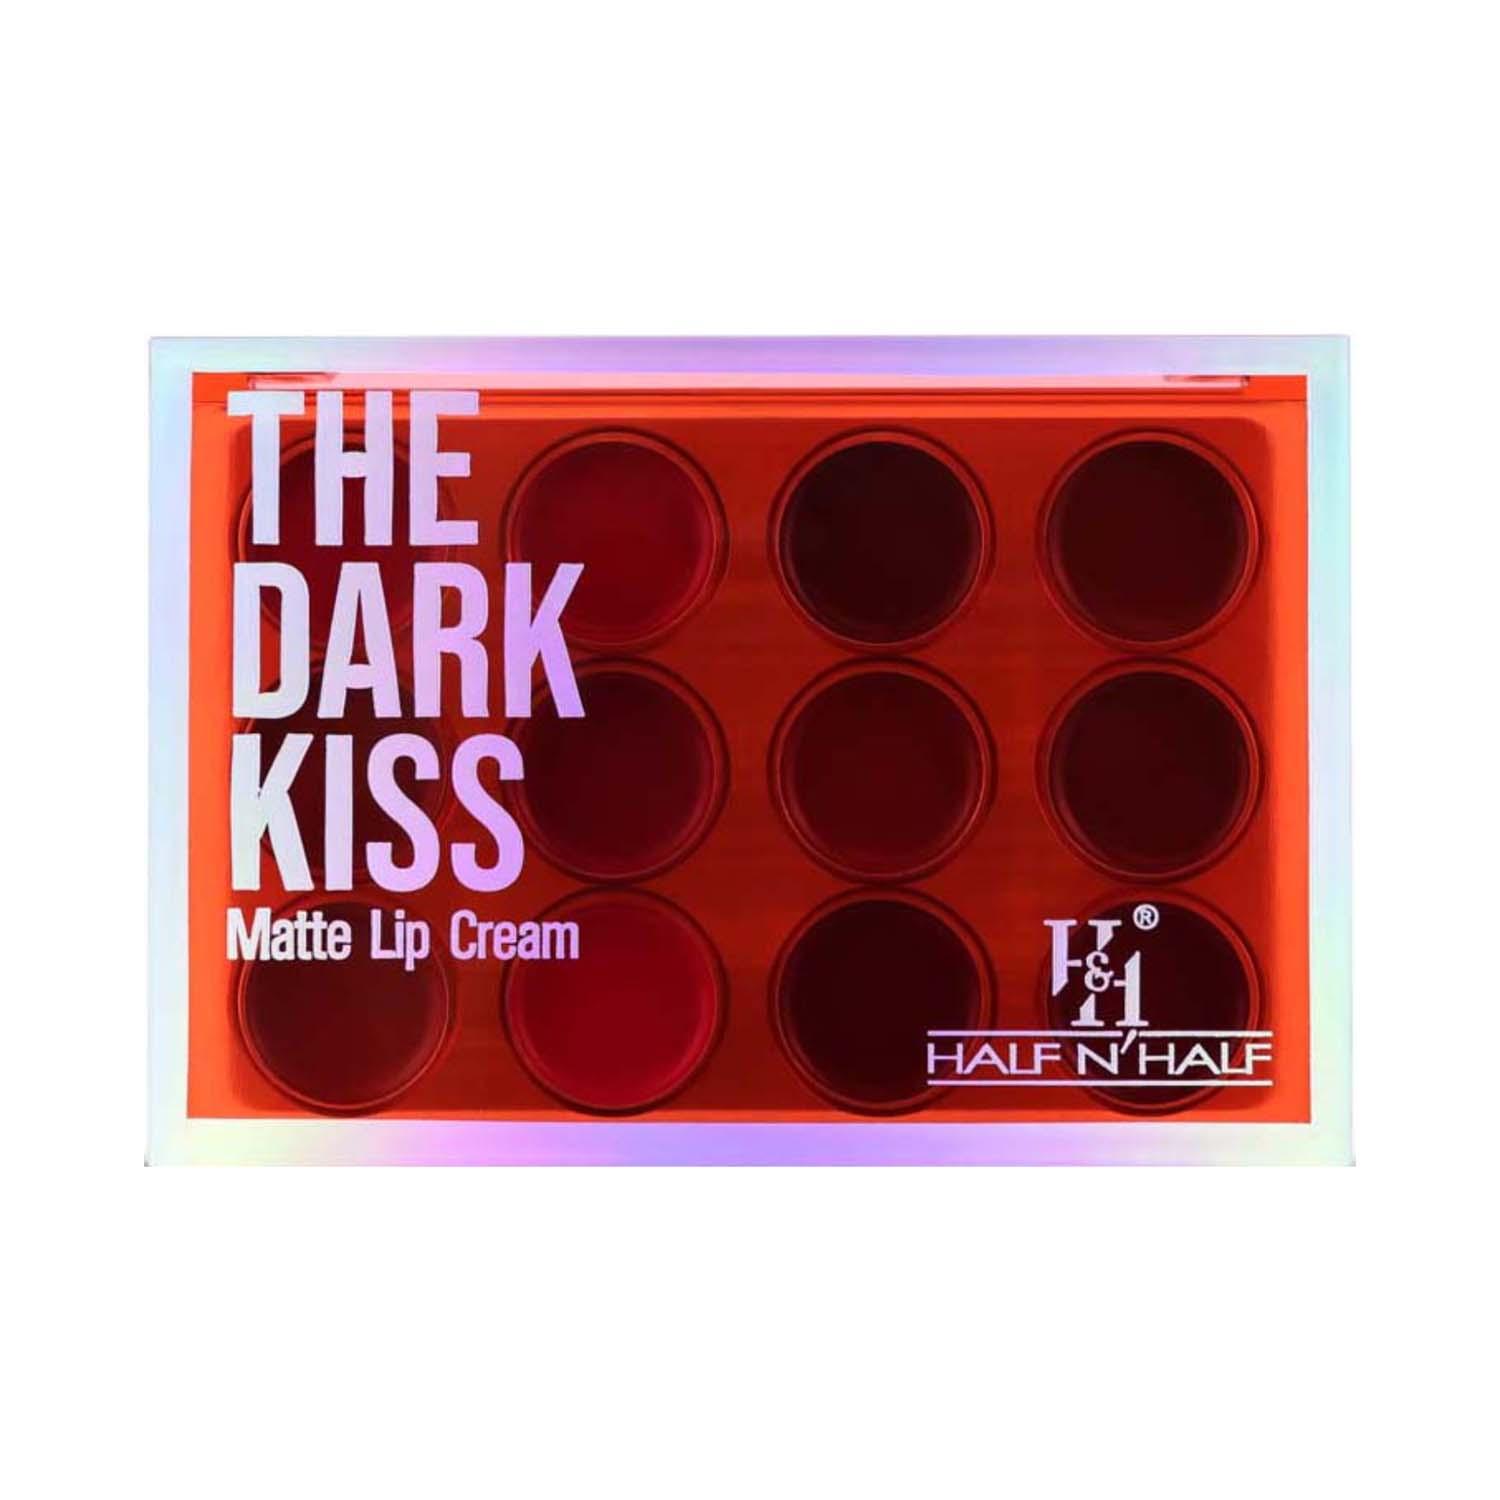 Half N Half | Half N Half Matte Lip Cream Palette - 01 The Dark Kiss (12 g)